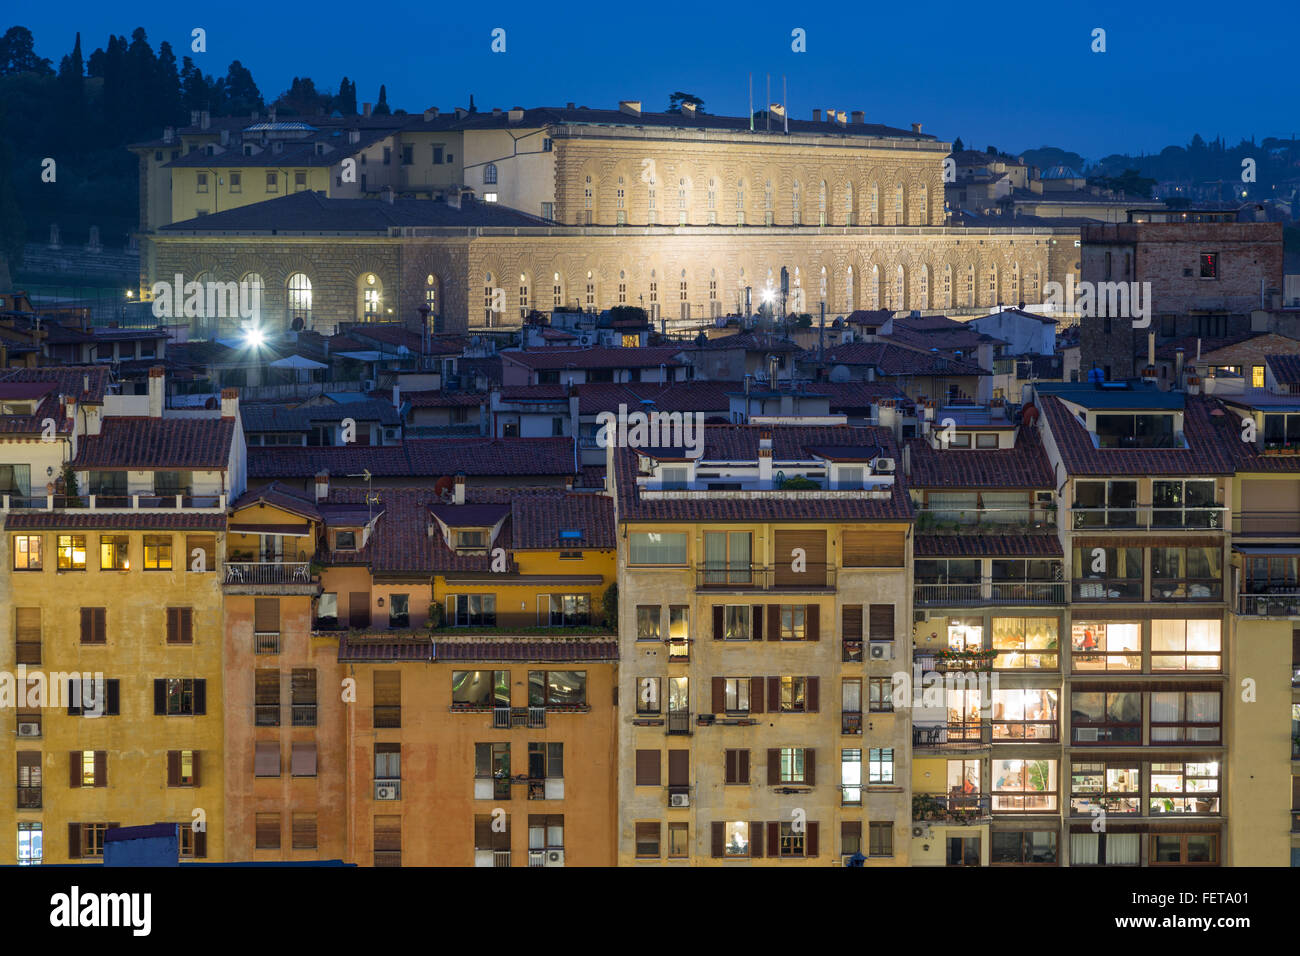 Palazzo Pitti, Pitti Palace, Renaissance palace, dusk, Florence, Tuscany, Italy Stock Photo